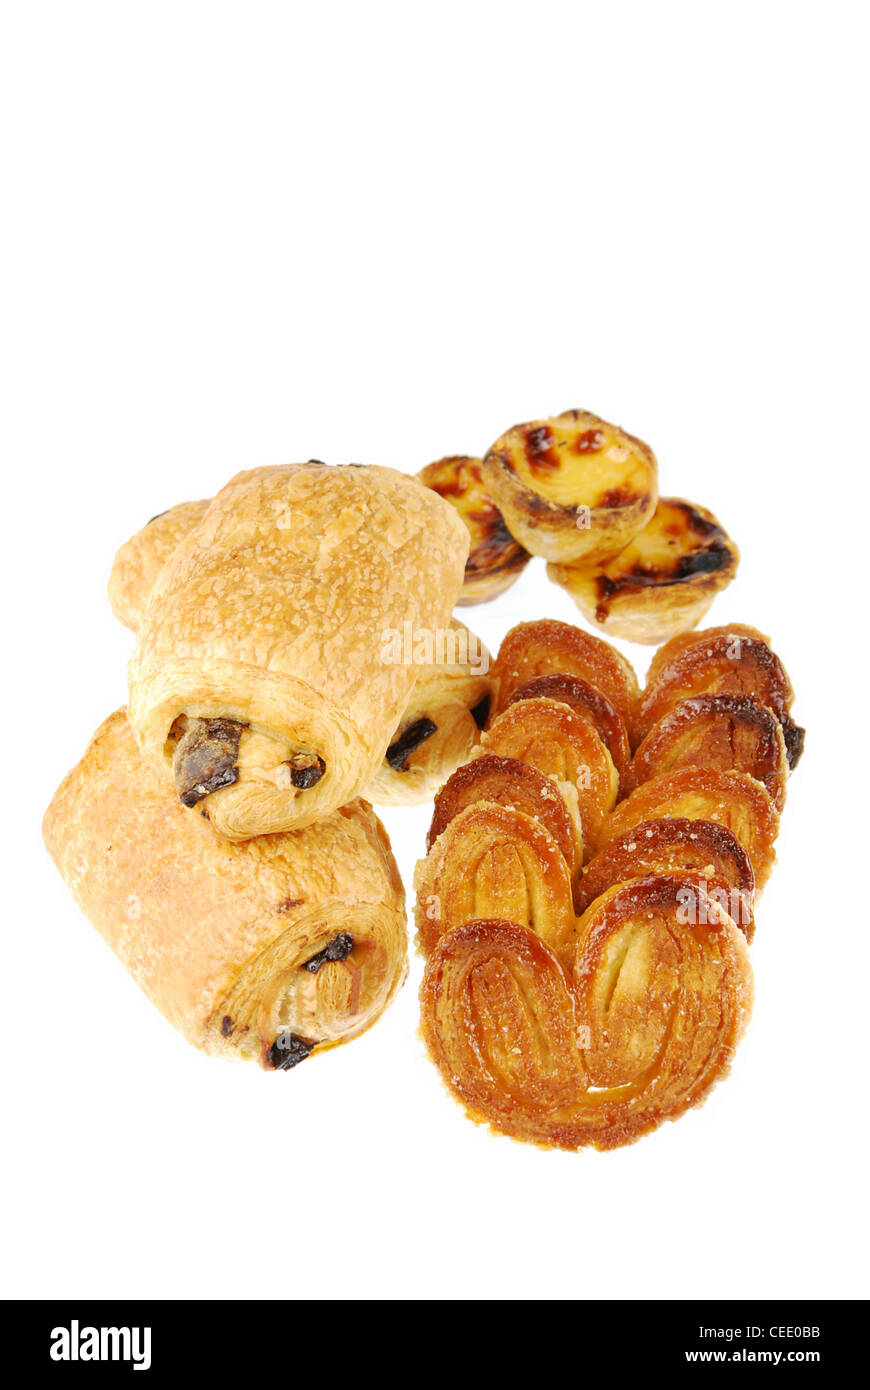 Bel assortiment de pâtisseries (pastel de nata, pain au chocolat et de palmier) isolé sur fond blanc Banque D'Images